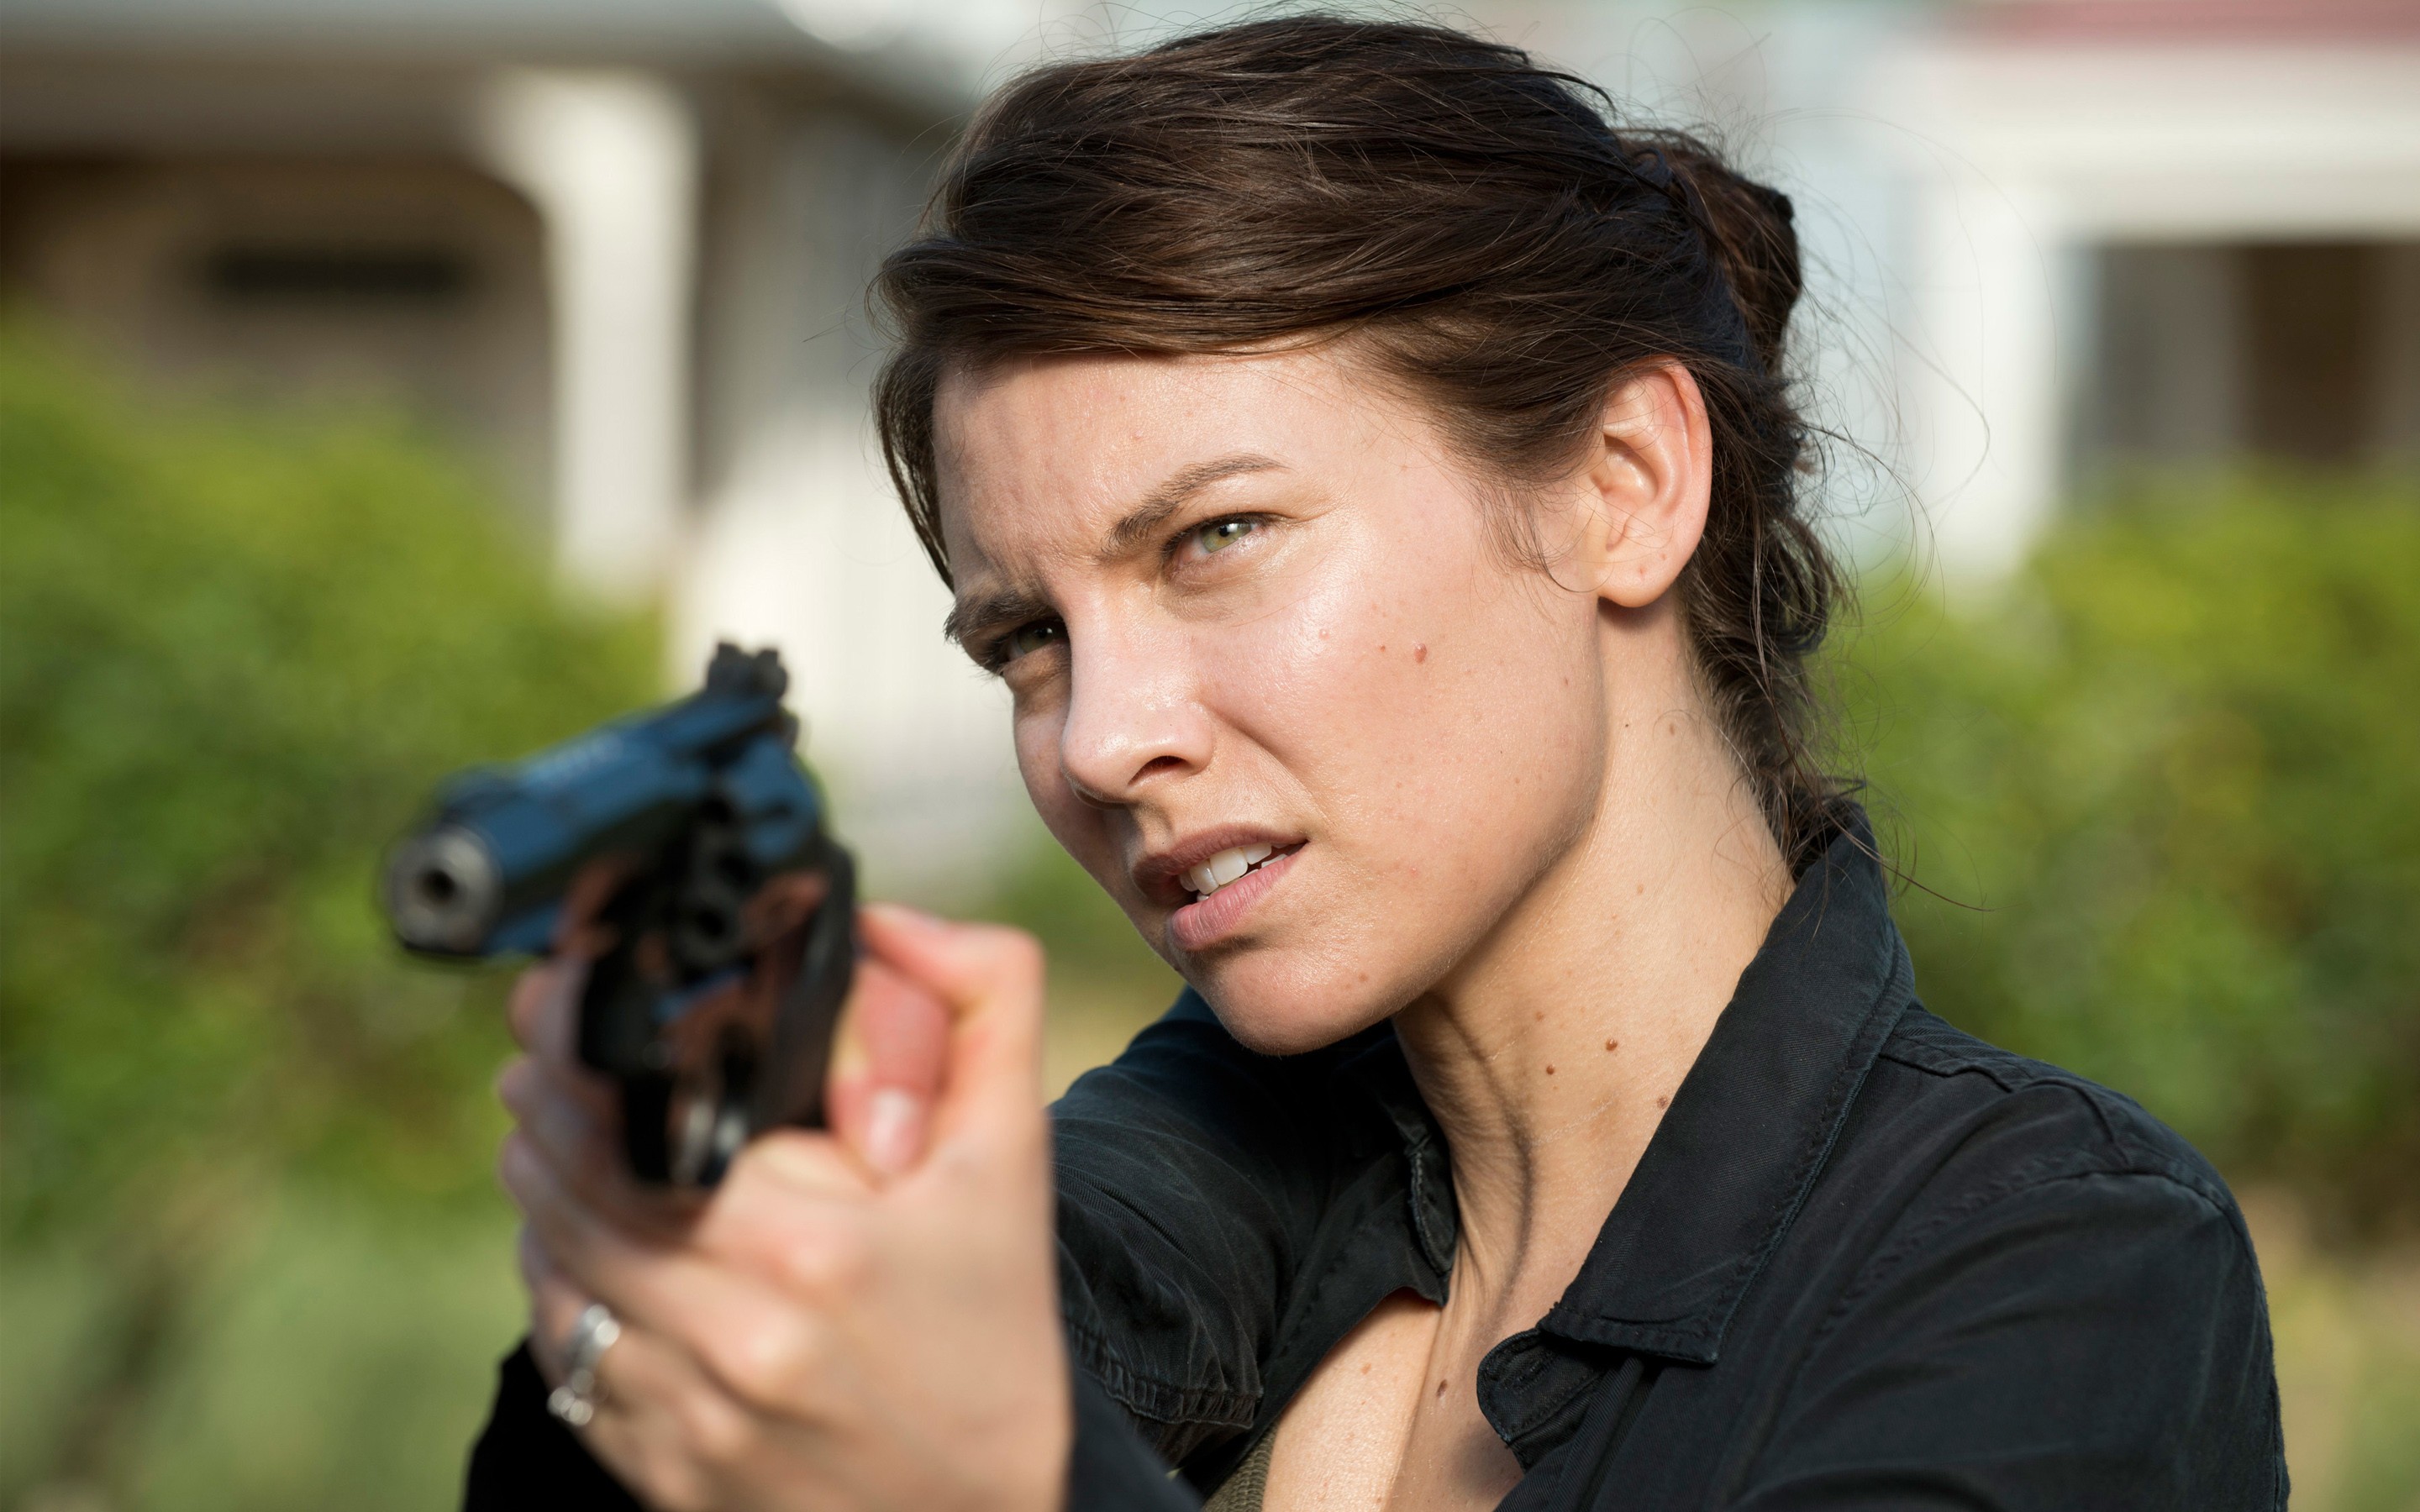 Maggie The Walking Dead Season 6 Wallpapers